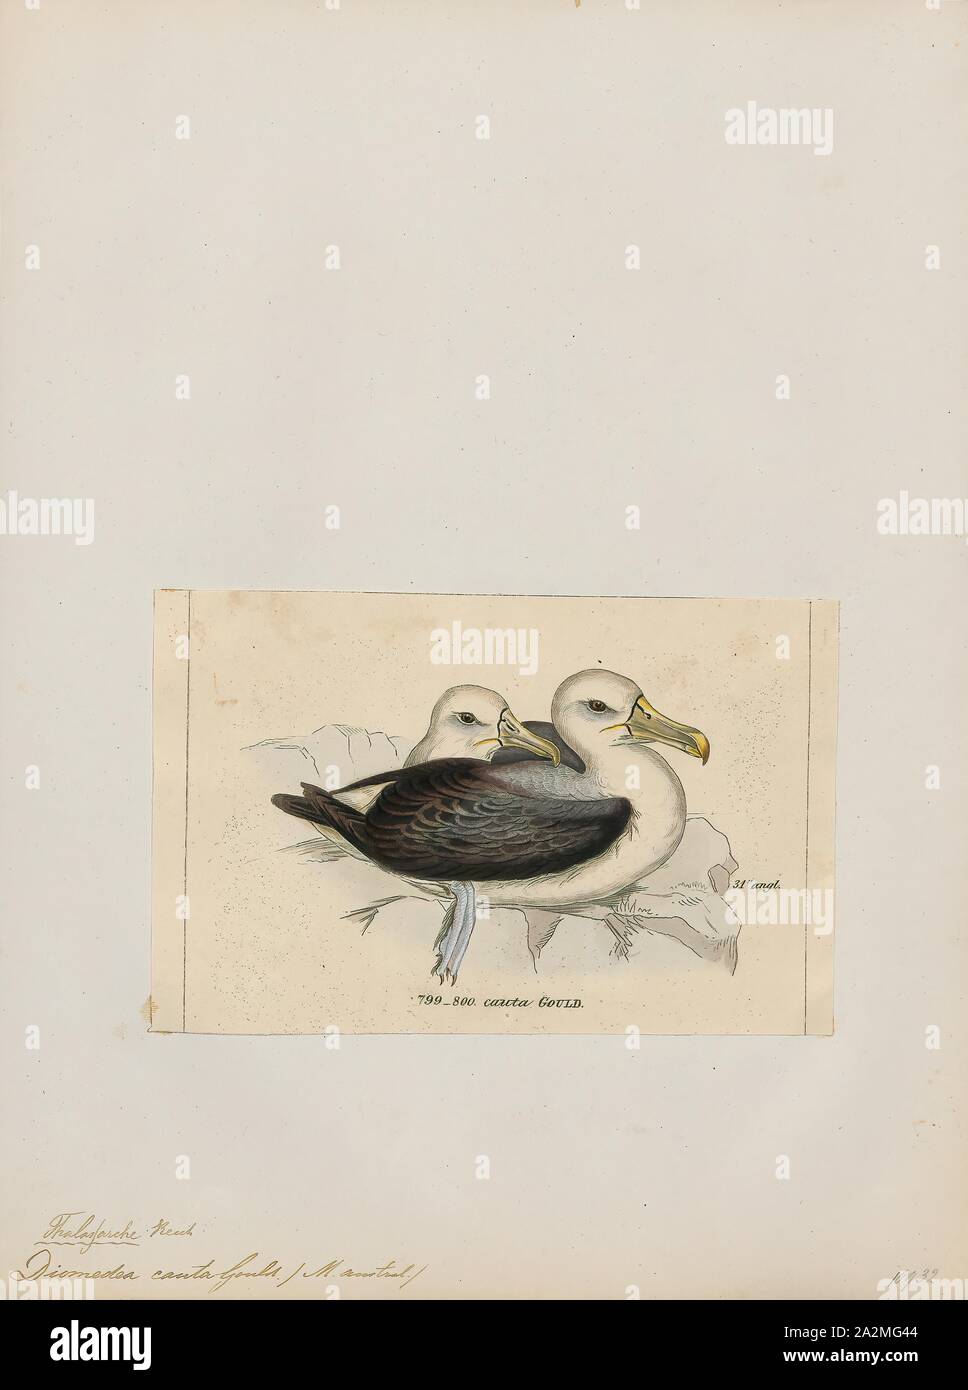 Diomedea cauta, Drucken, der schüchterne Albatross oder schüchtern mollymawk (Thalassarche cauta) ist eine mittelgroße Albatross, dass Rassen auf drei australischen Inseln und erstreckt sich über den südlichen Indischen Ozean., 1820-1860 Stockfoto